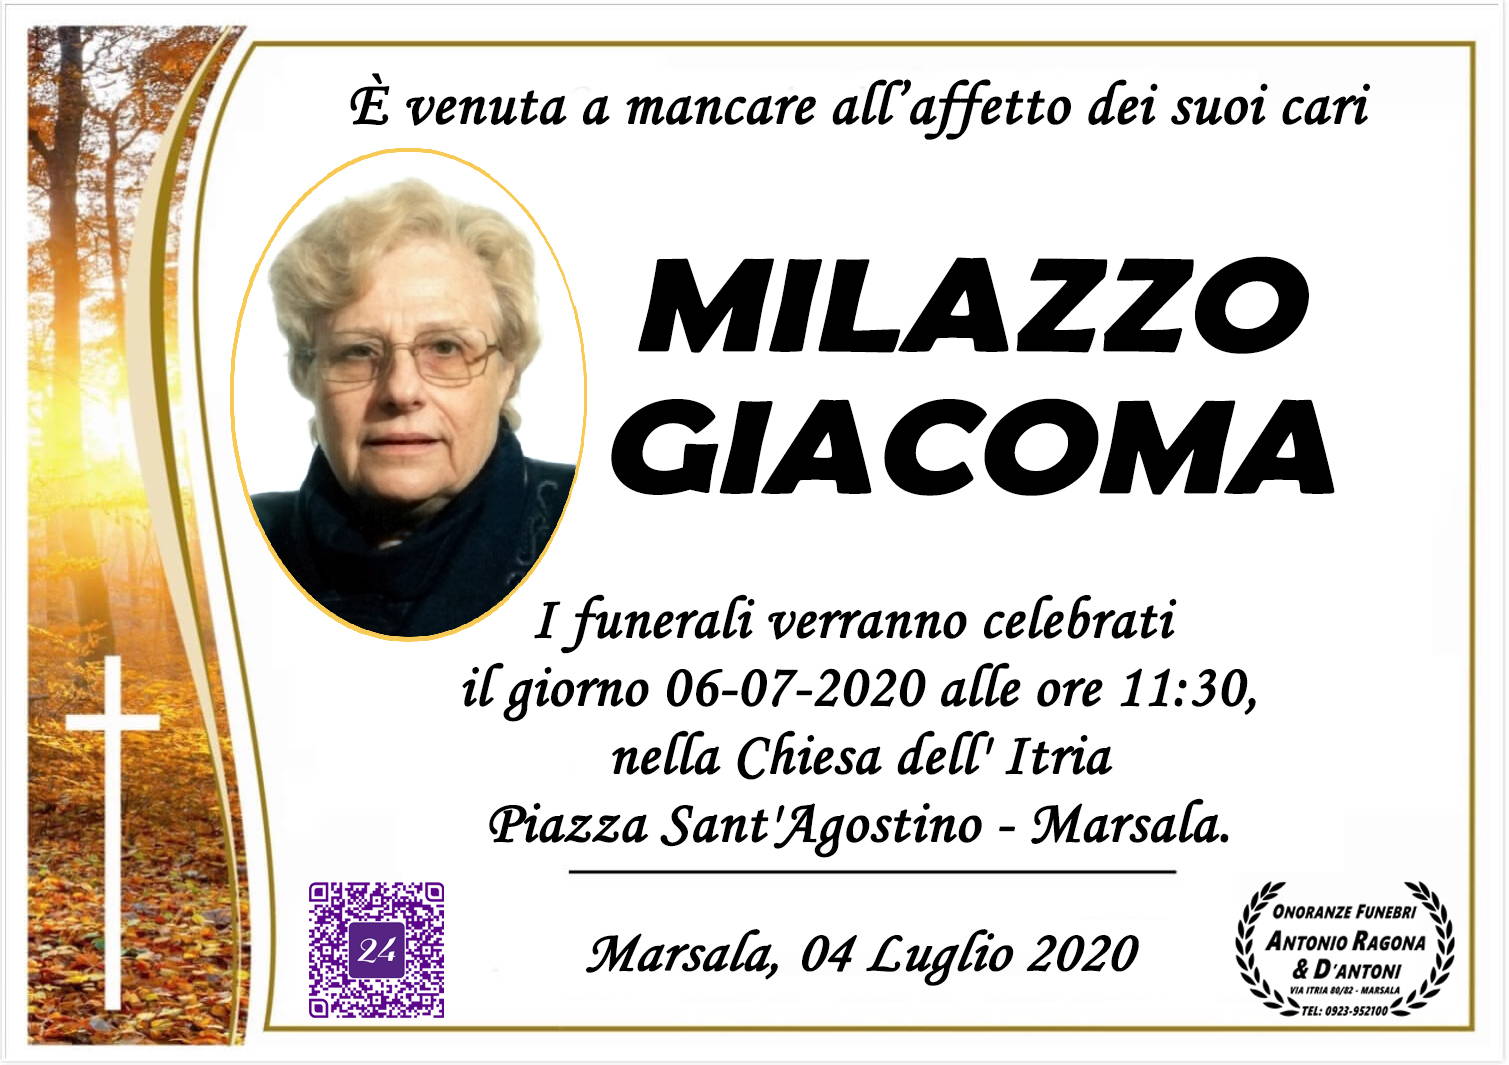 Giacoma Milazzo